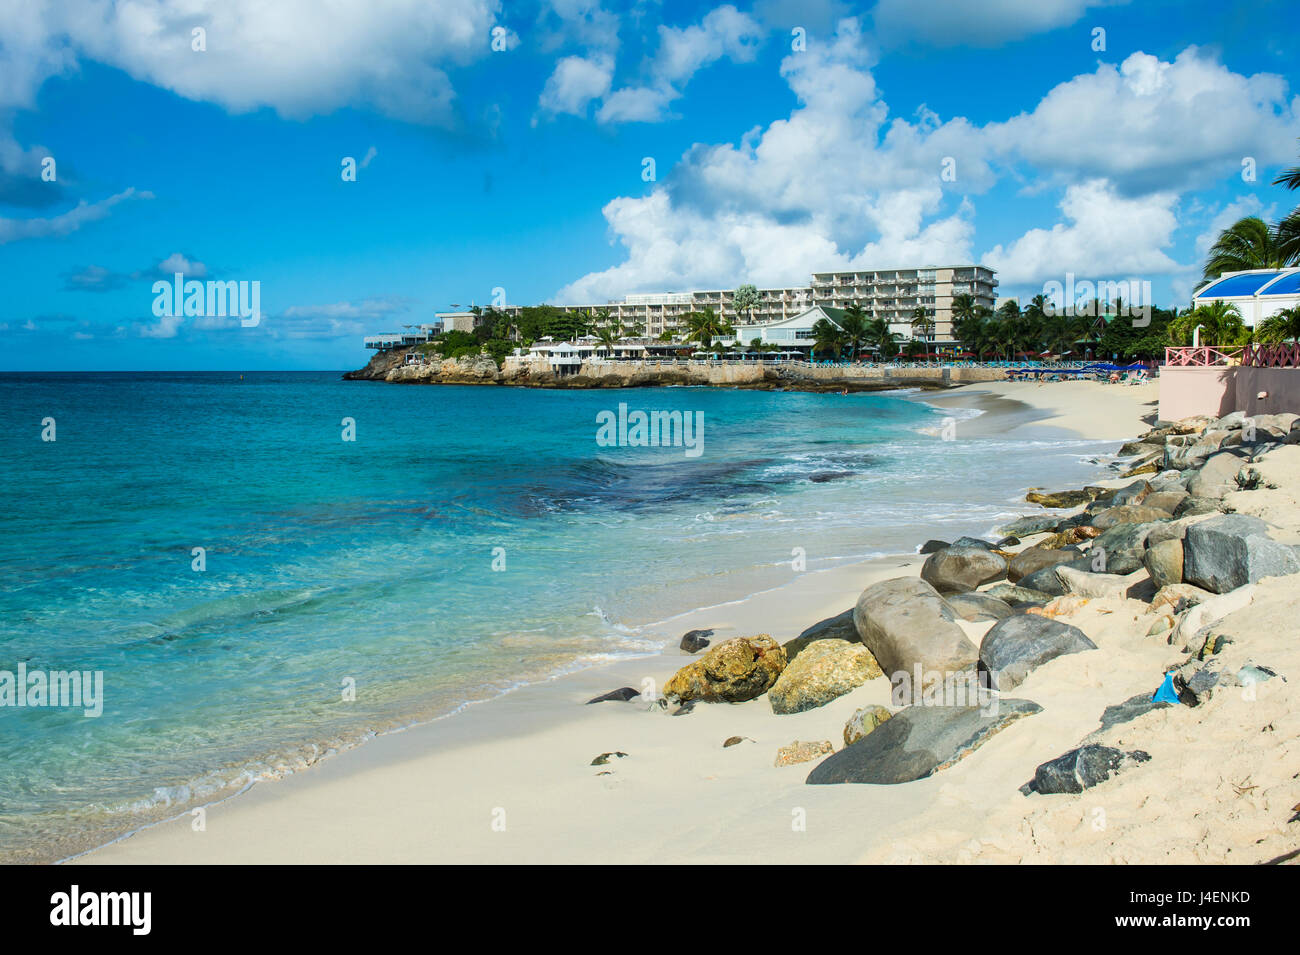 Plage de Maho Bay, Sint Maarten, Antilles, Caraïbes, Amérique Centrale Banque D'Images